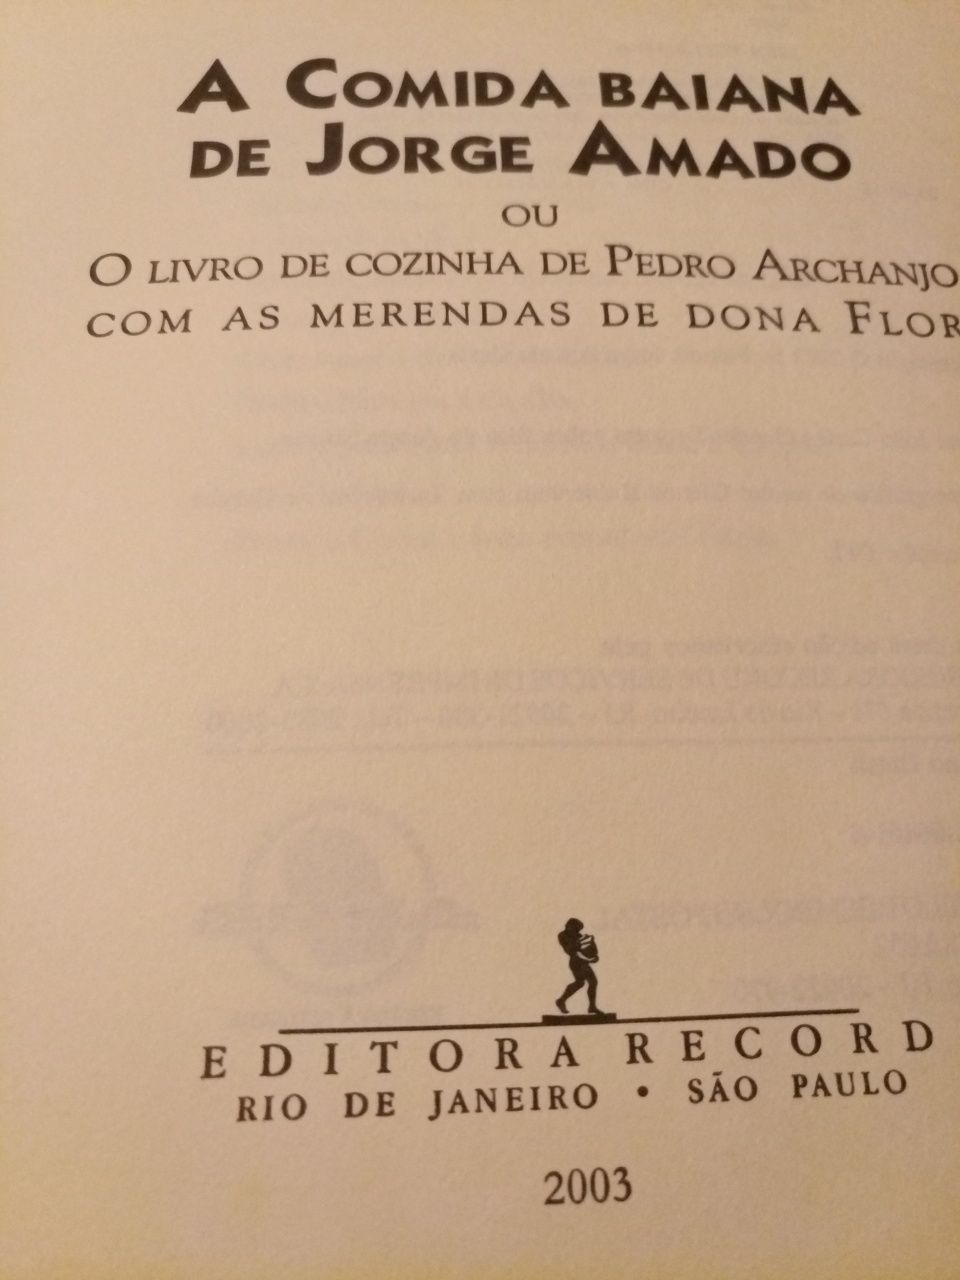 Livro "A Comida Baiana de Jorge Amado"